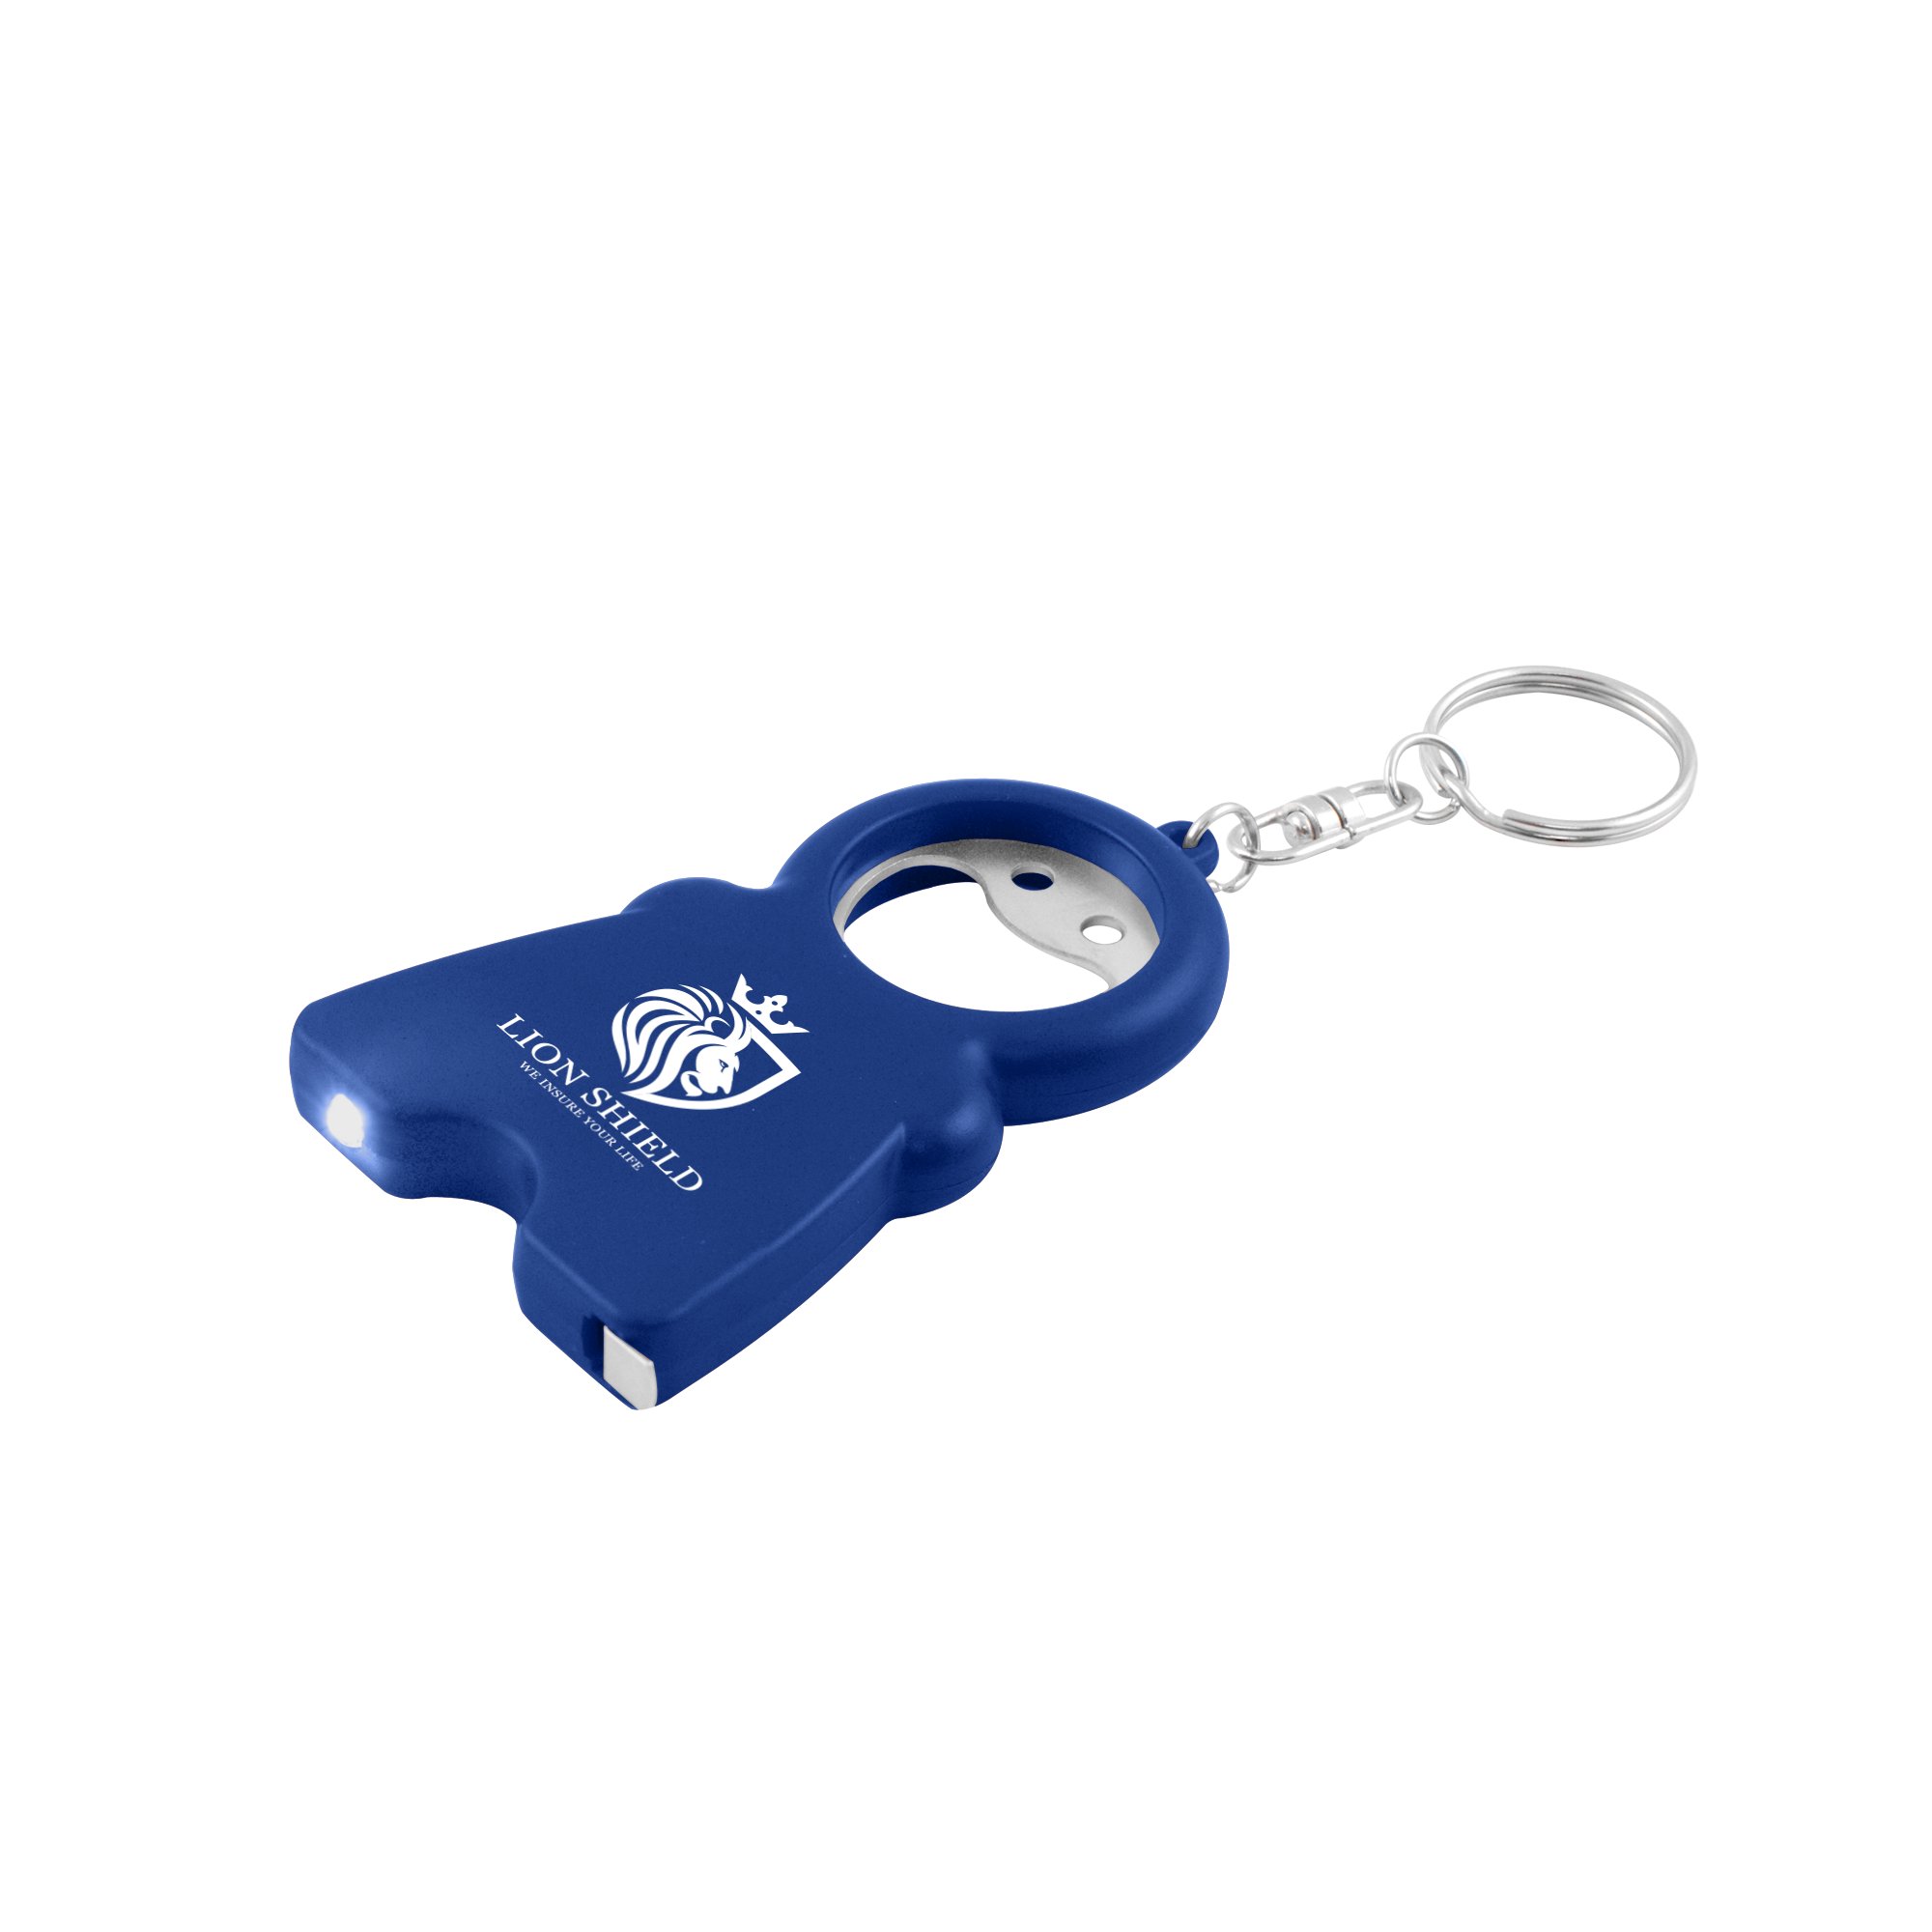 Porte clés POCHE VISION - Happy Gift, objets publicitaires